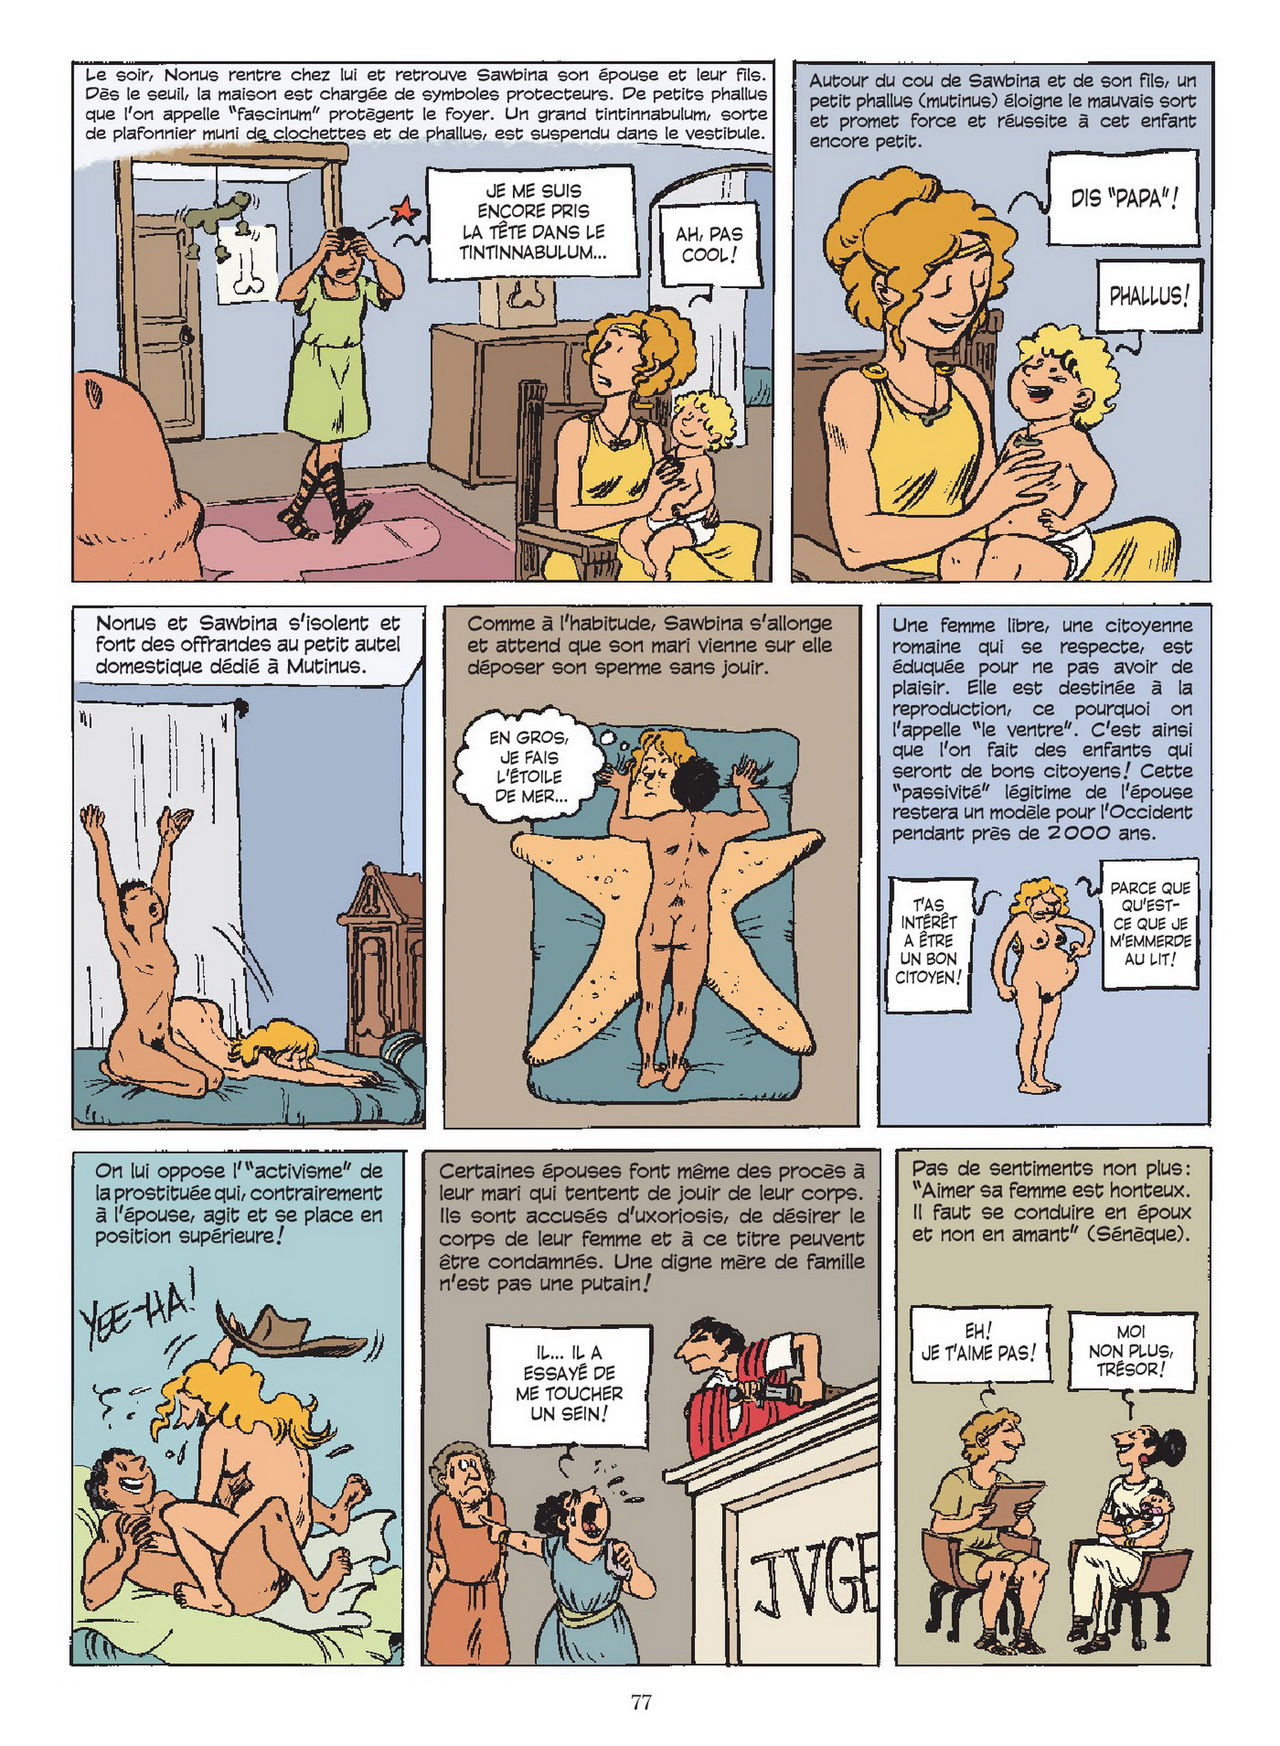 Sexe Story / Une Histoire du Sexe numero d'image 77